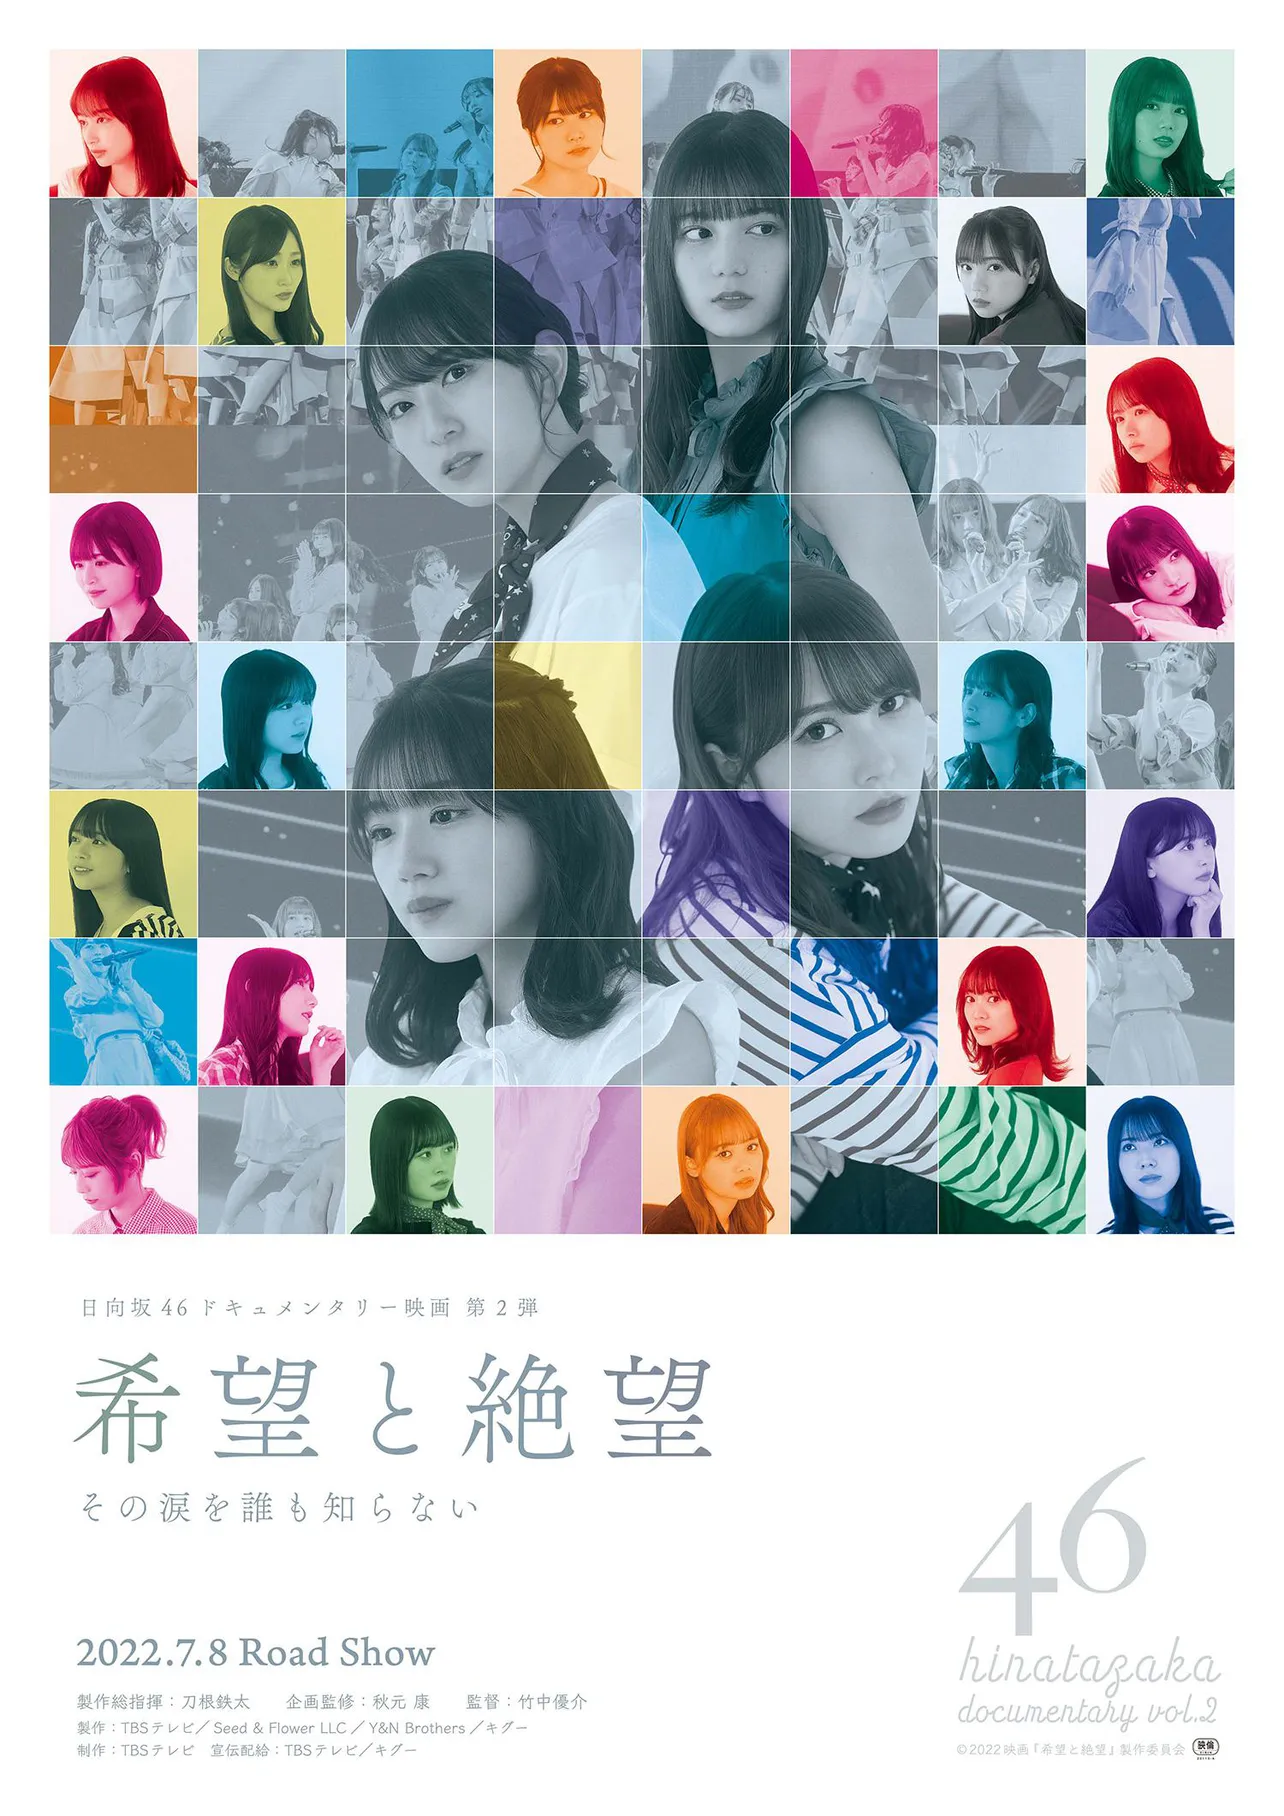 日向坂46ドキュメンタリー映画「希望と絶望」のポスタービジュアルが解禁された